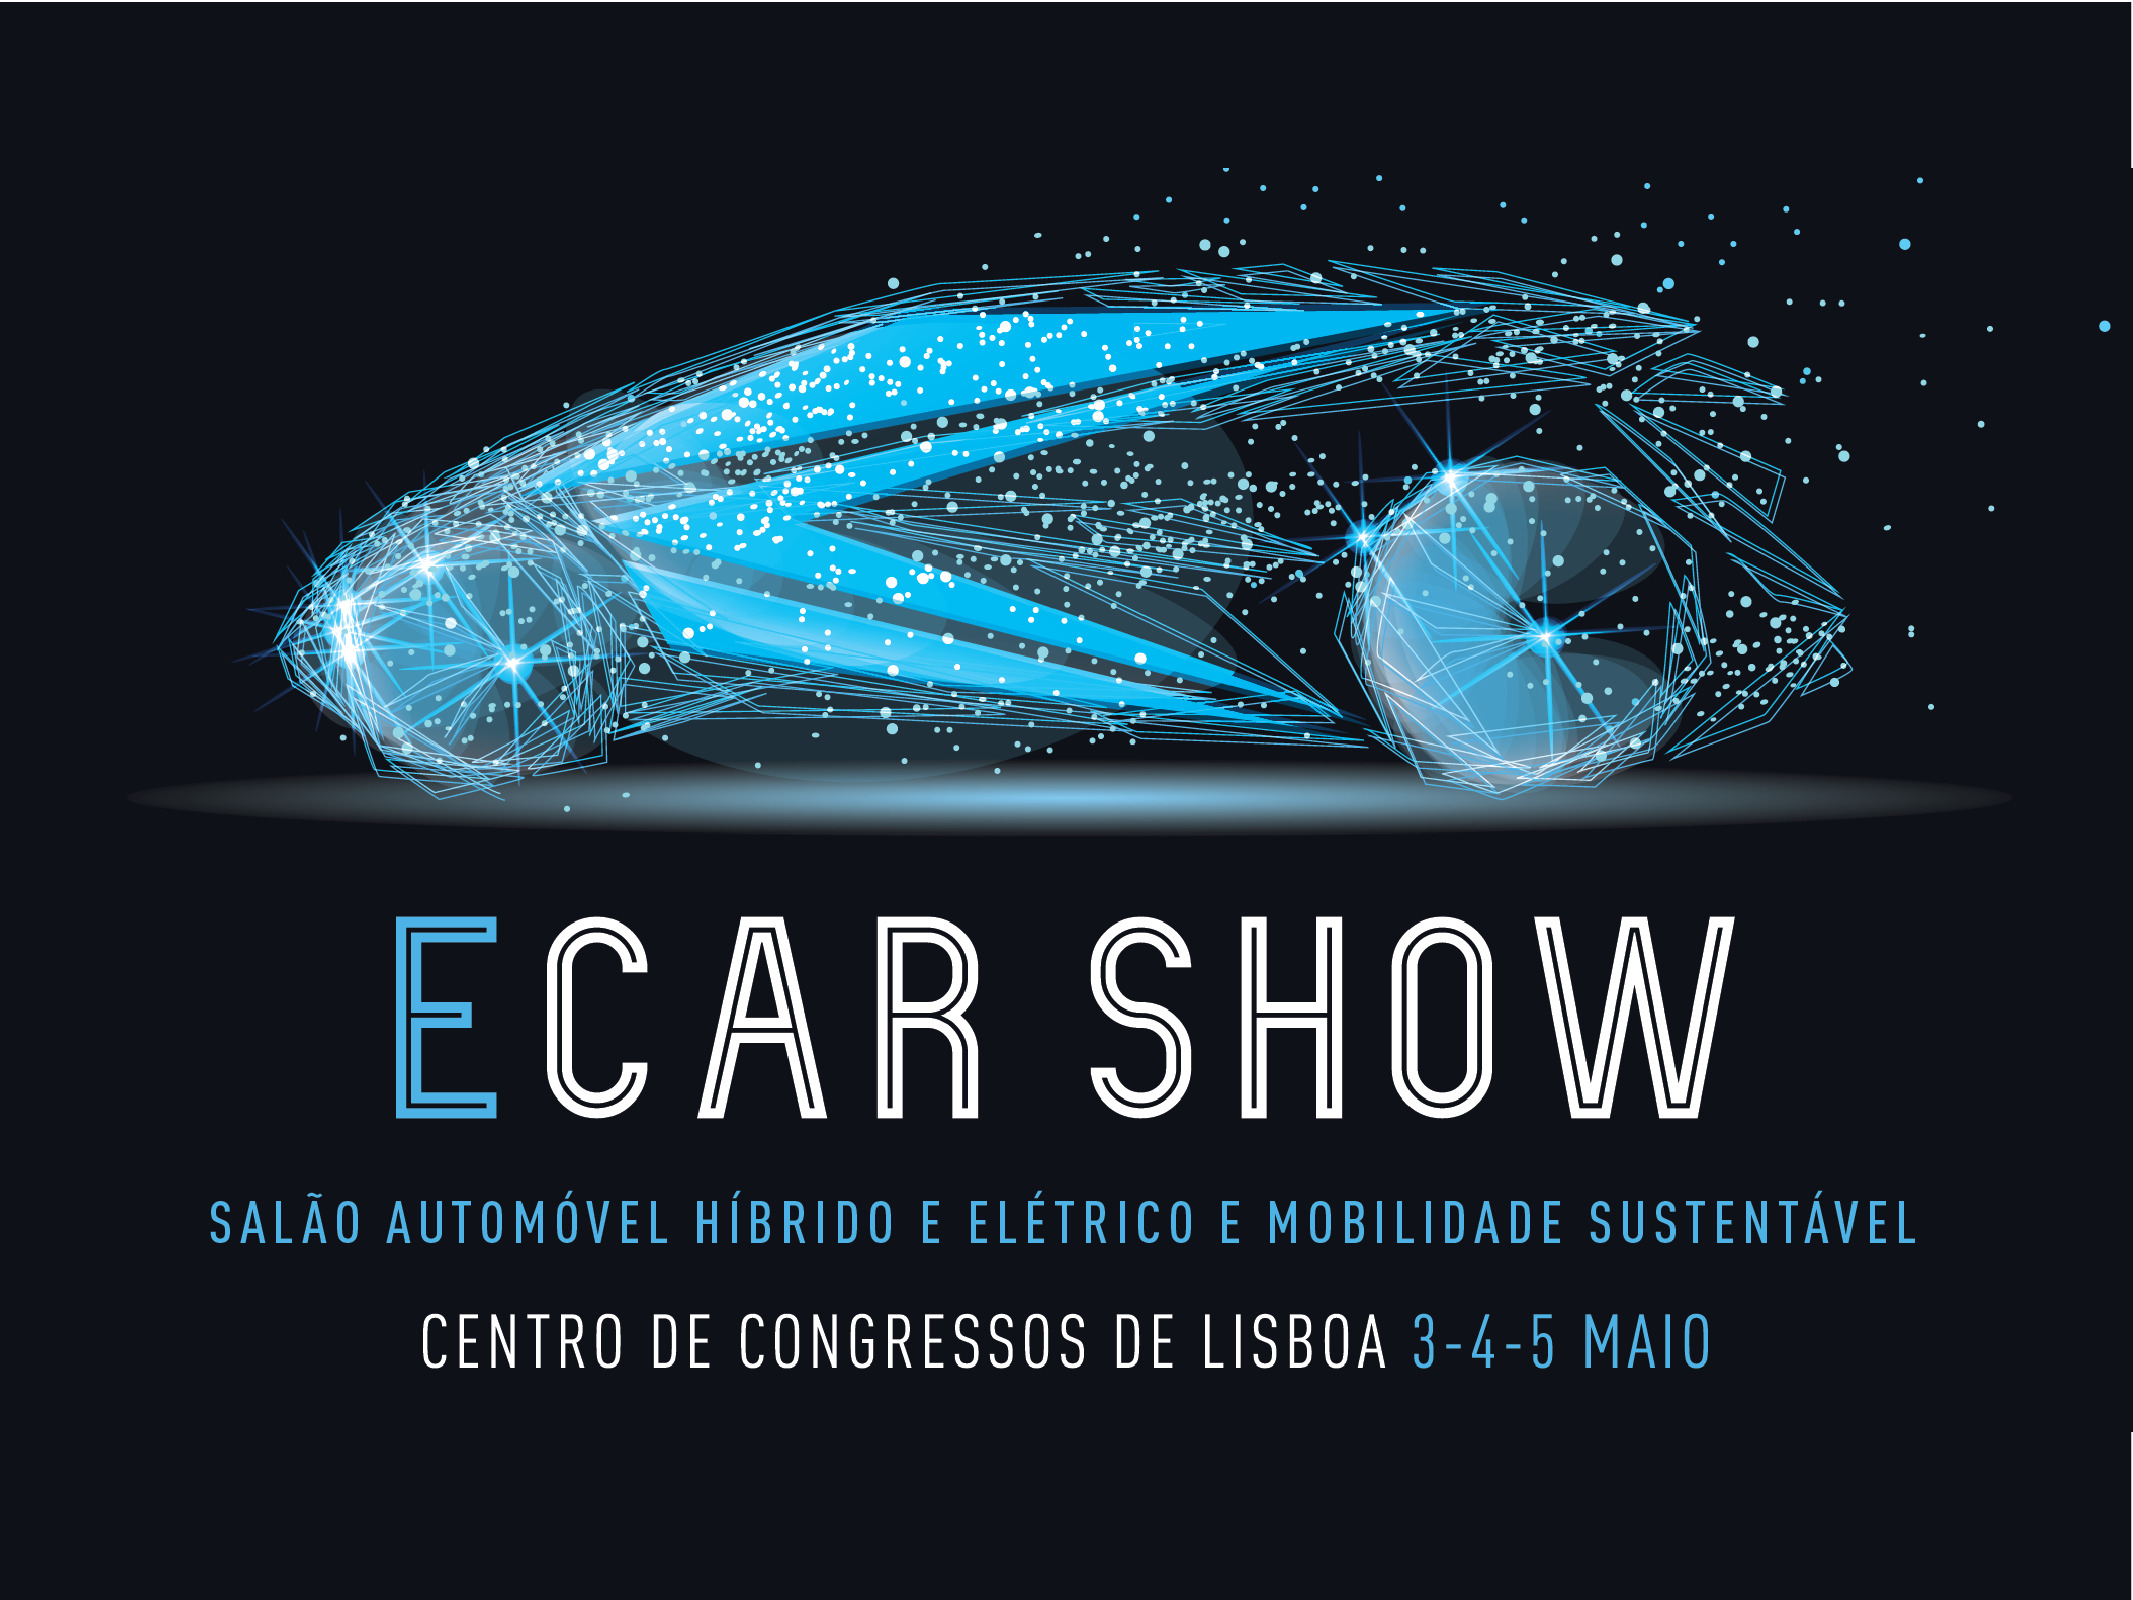 ECAR SHOW Salão Automóvel Híbrido e Elétrico e Mobilidade Sustentável